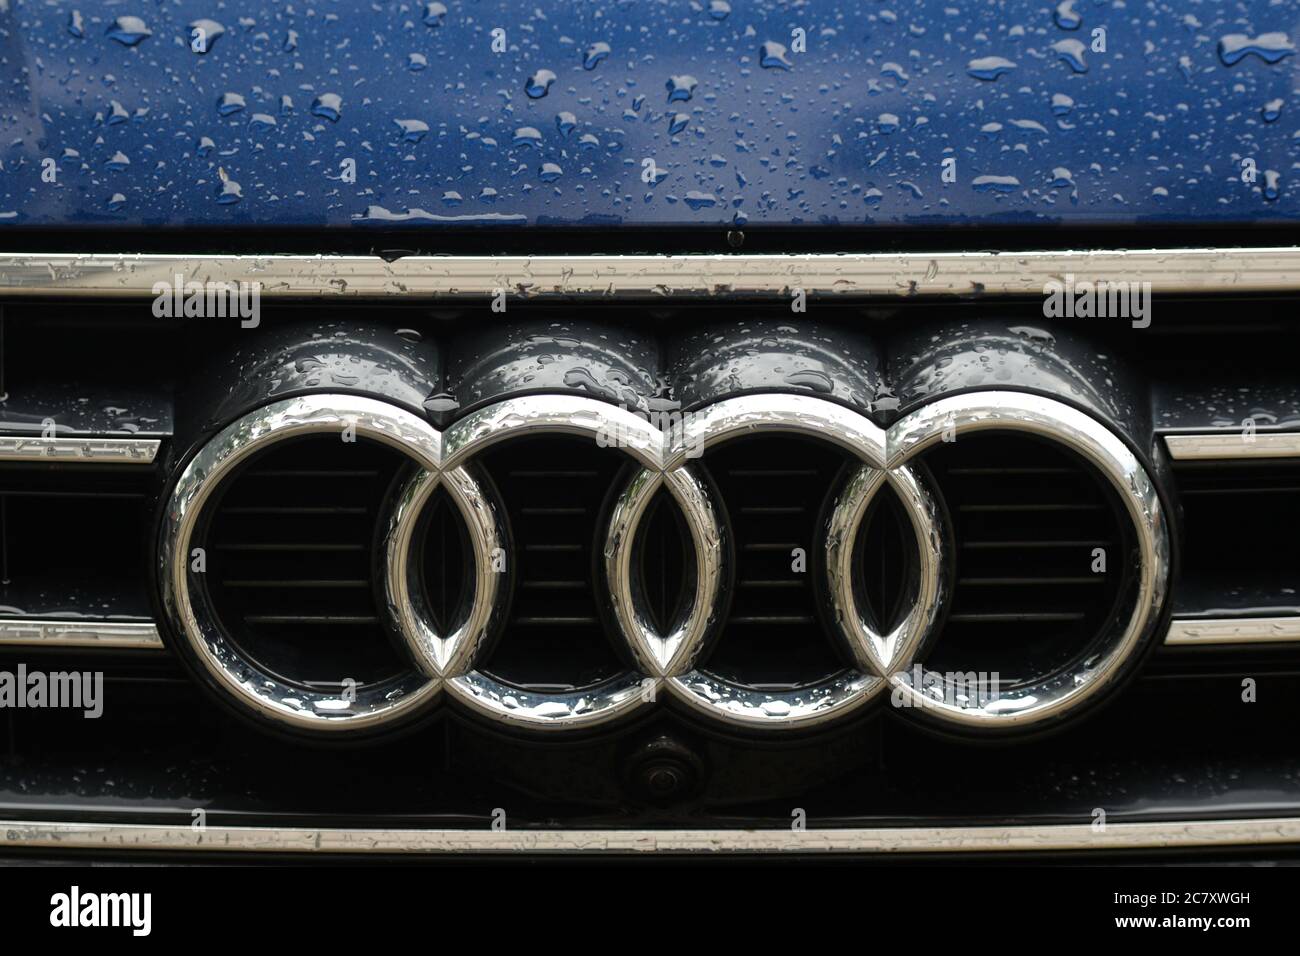 Un logo d'une Audi, un constructeur automobile multinational allemand, vu sur une voiture garée à Cracovie. Banque D'Images